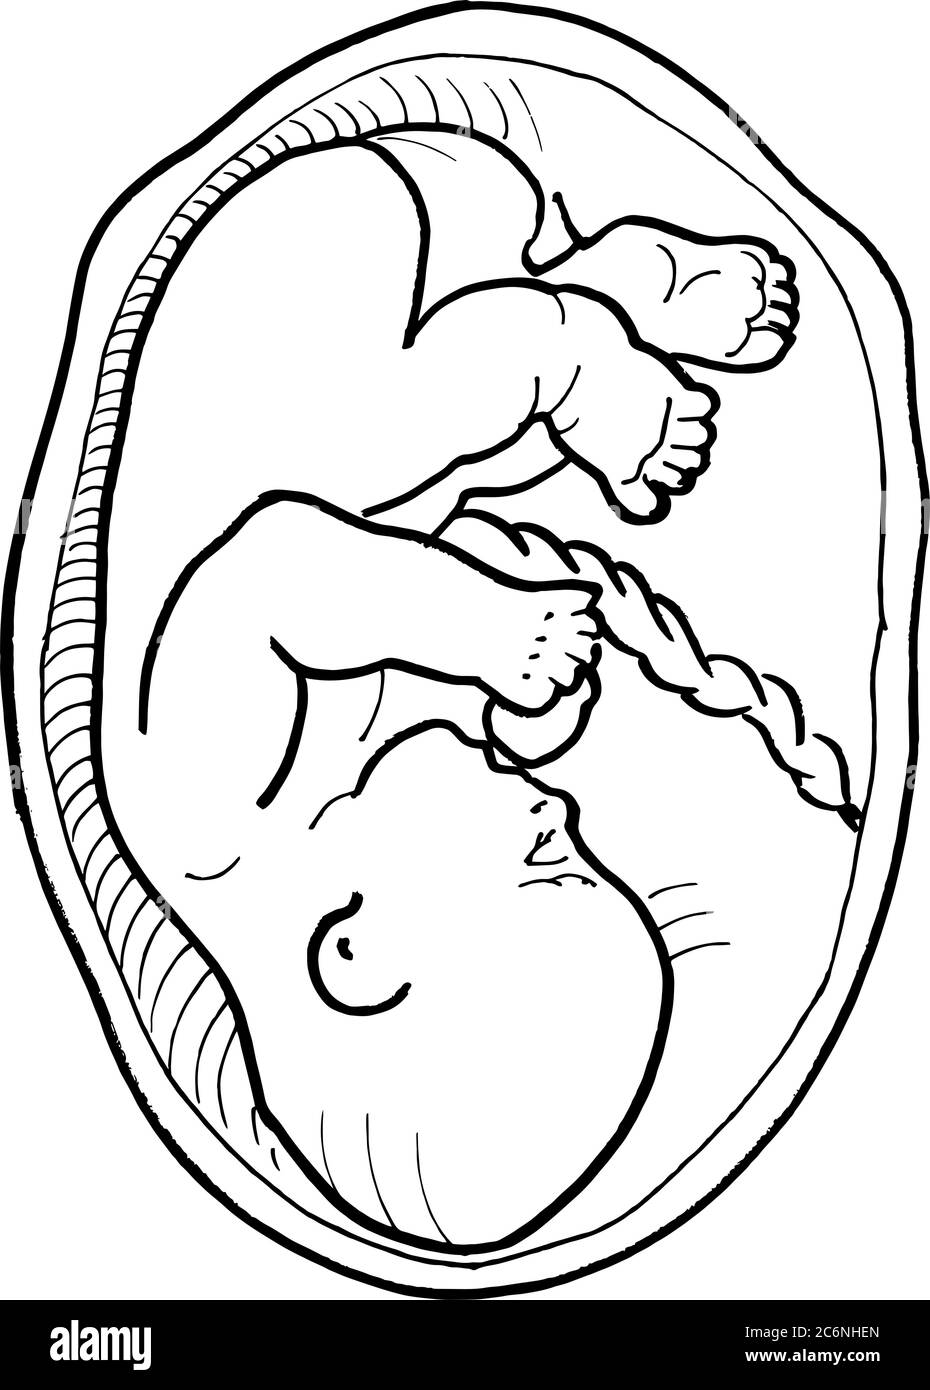 Contorno vector dibujo del embrión humano. Plantilla editable de diseño médico Ilustración del Vector